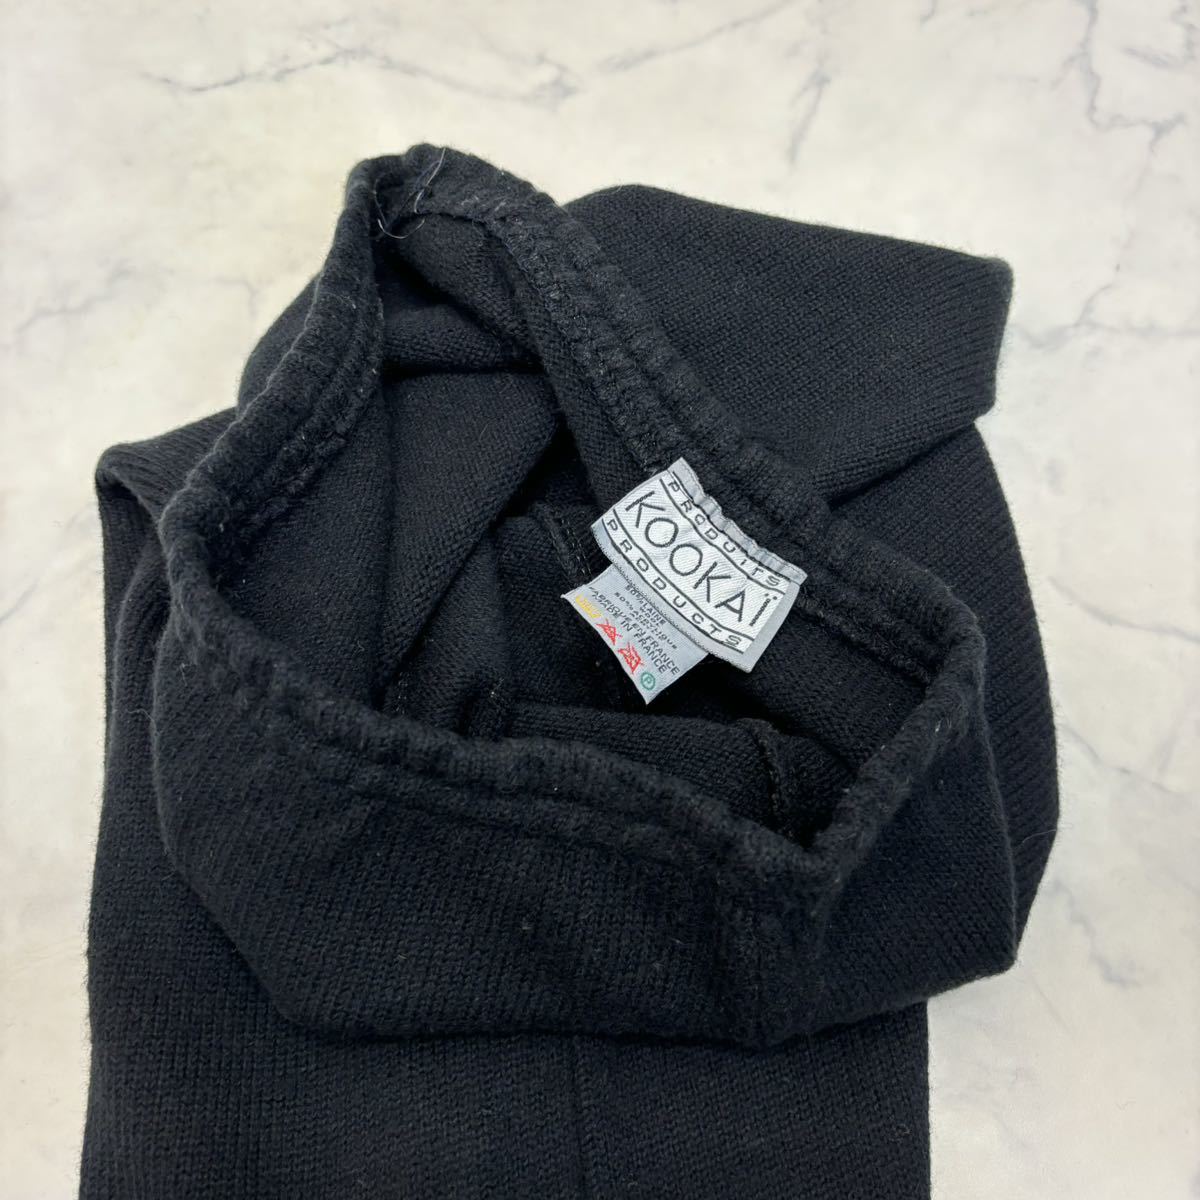 フランス製 KOOKAI パンツ ニット 黒 ブラック 羊毛50% ウール混 レディース クーカイ_画像4